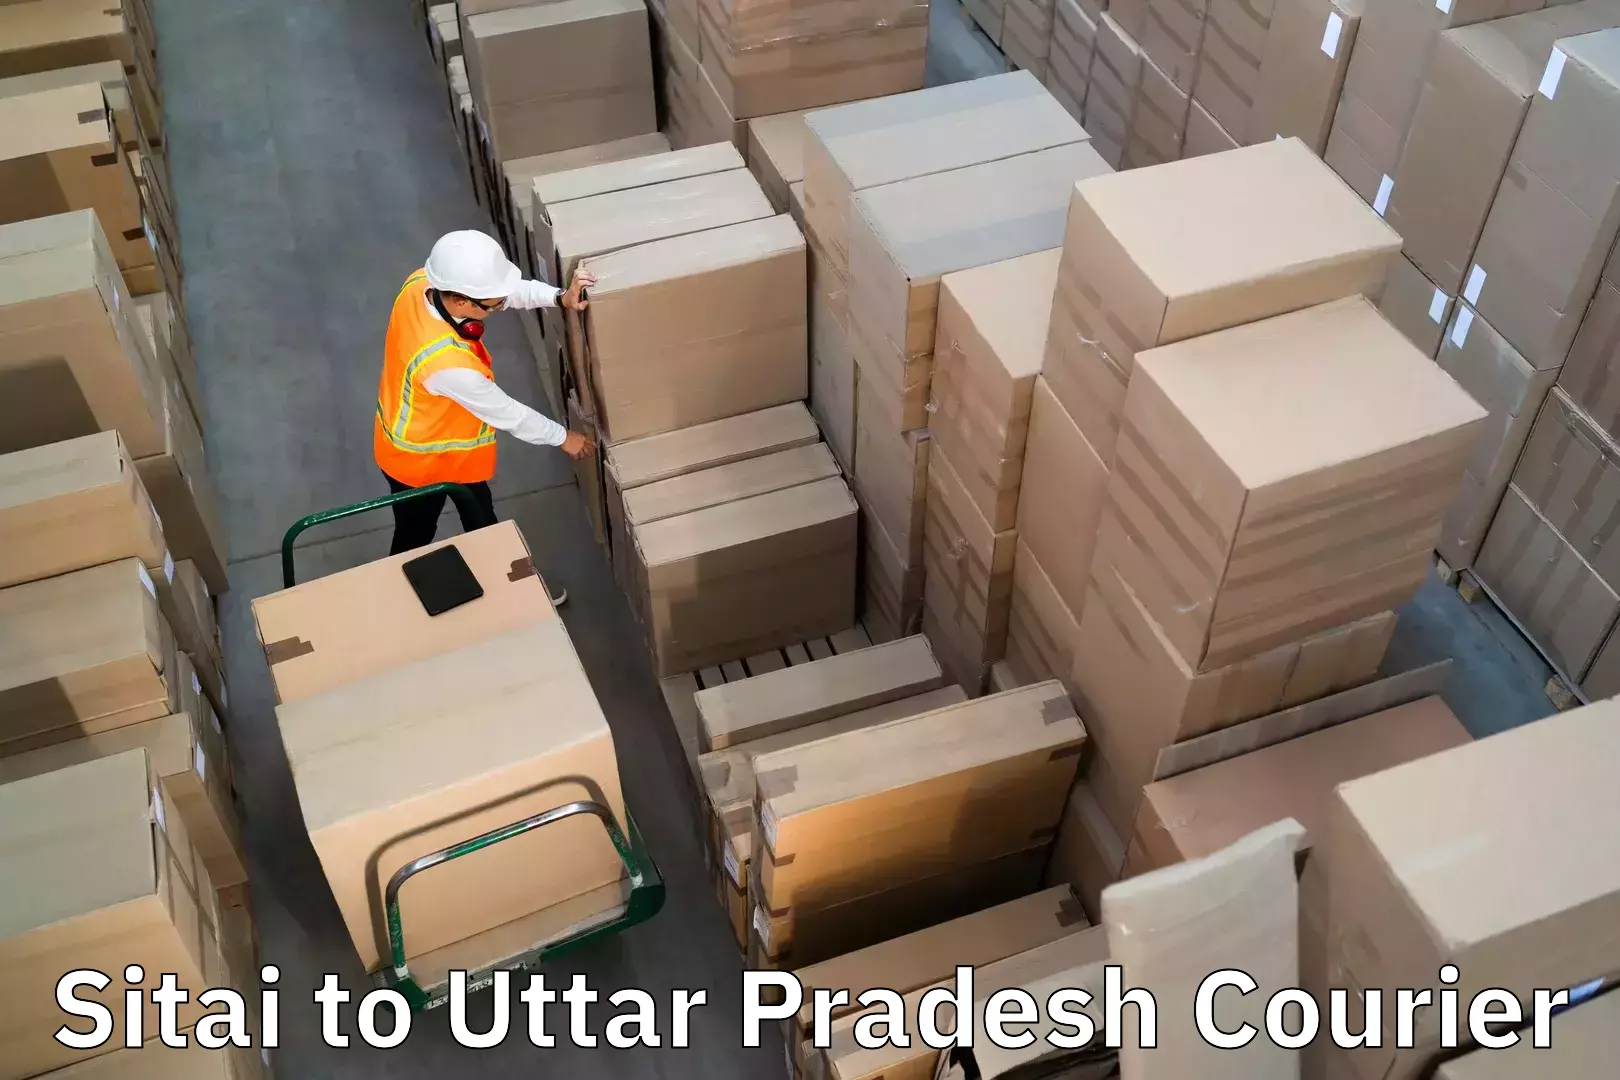 Luggage dispatch service Sitai to Aligarh Muslim University